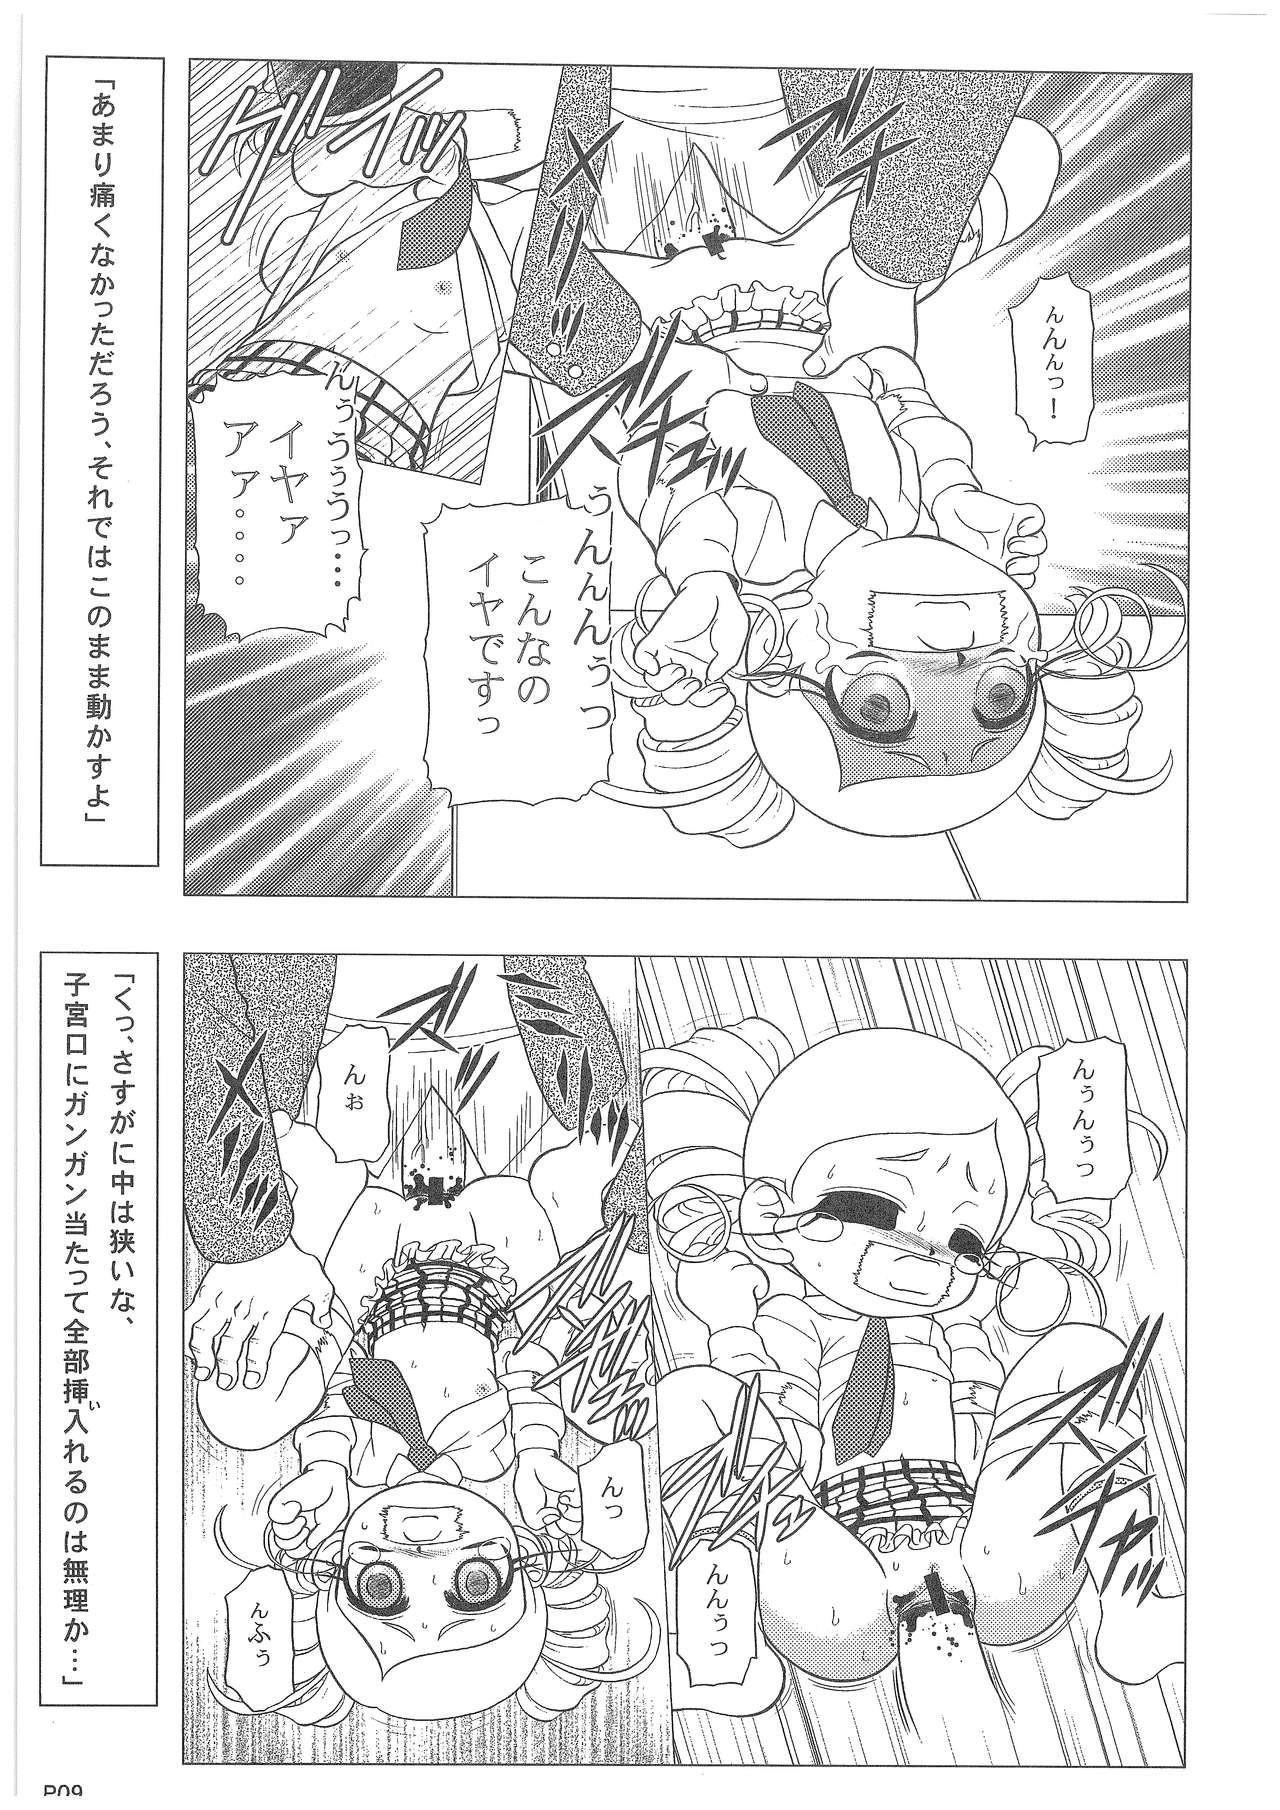 Power Puff Girls Z 001 hentai manga picture 7